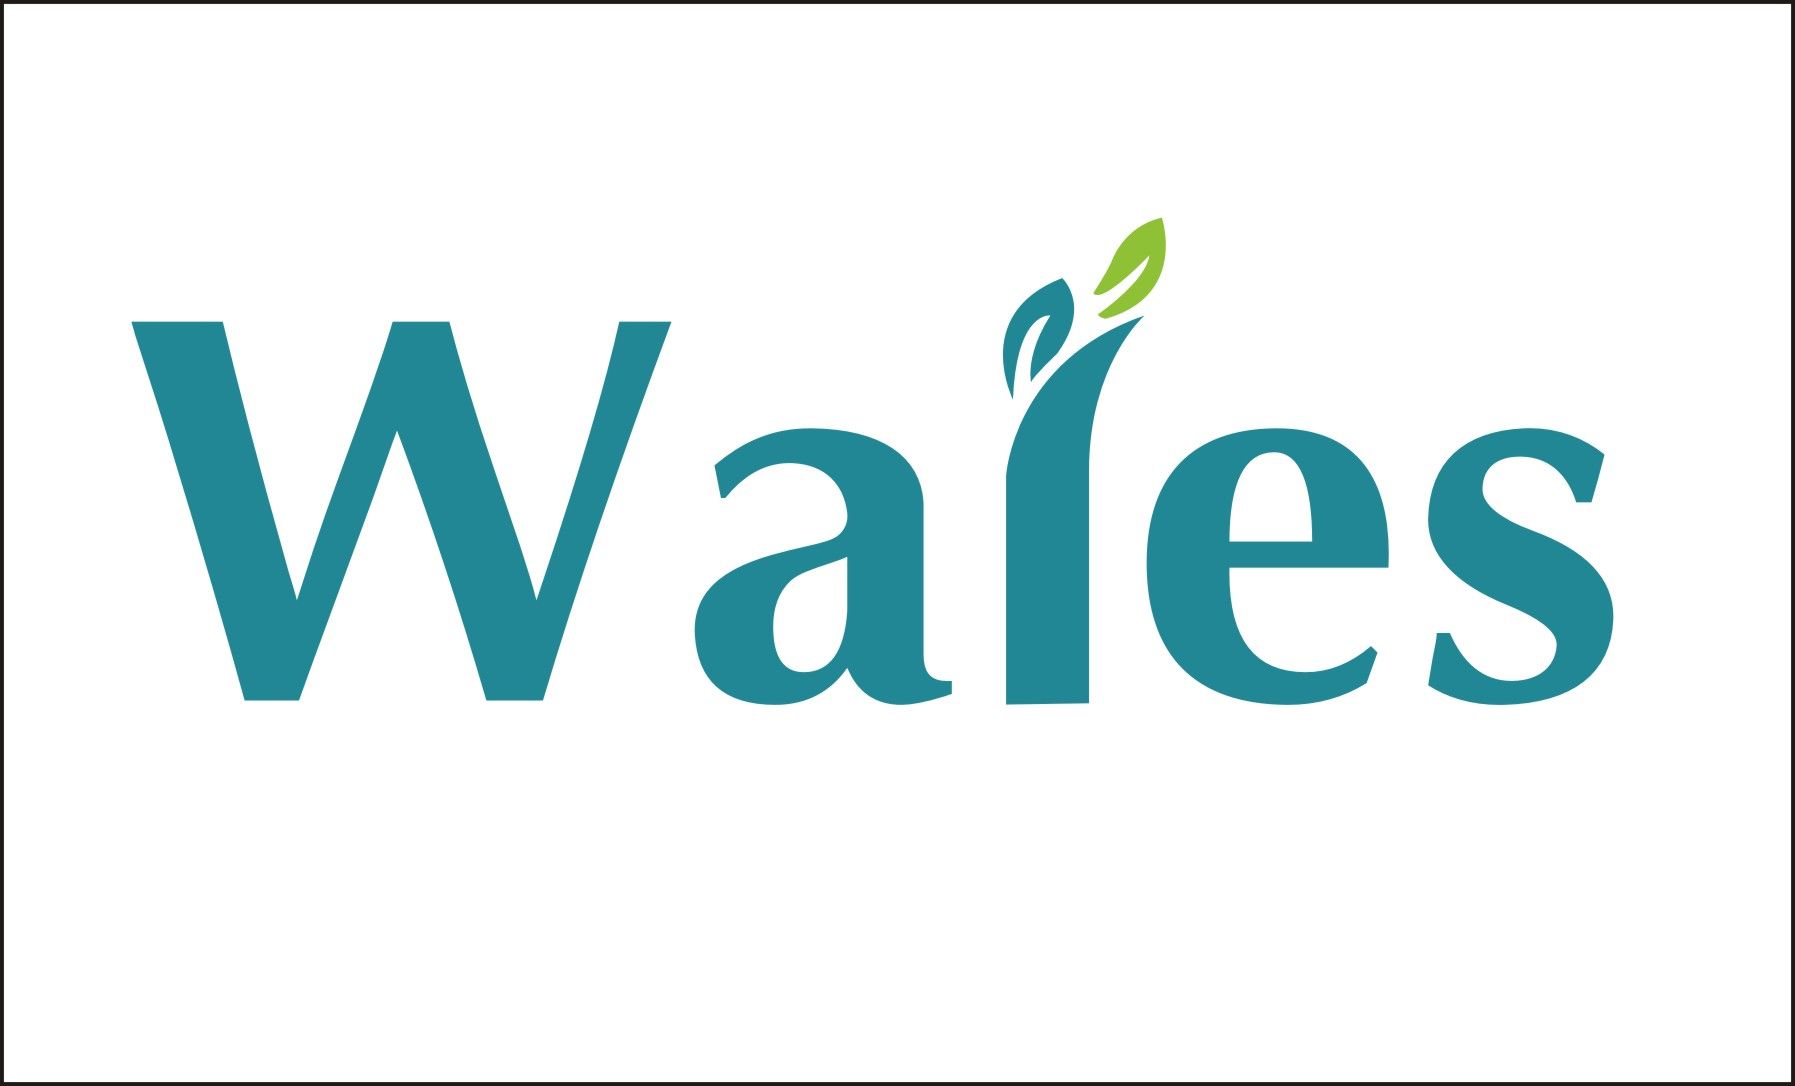 Wales Industries